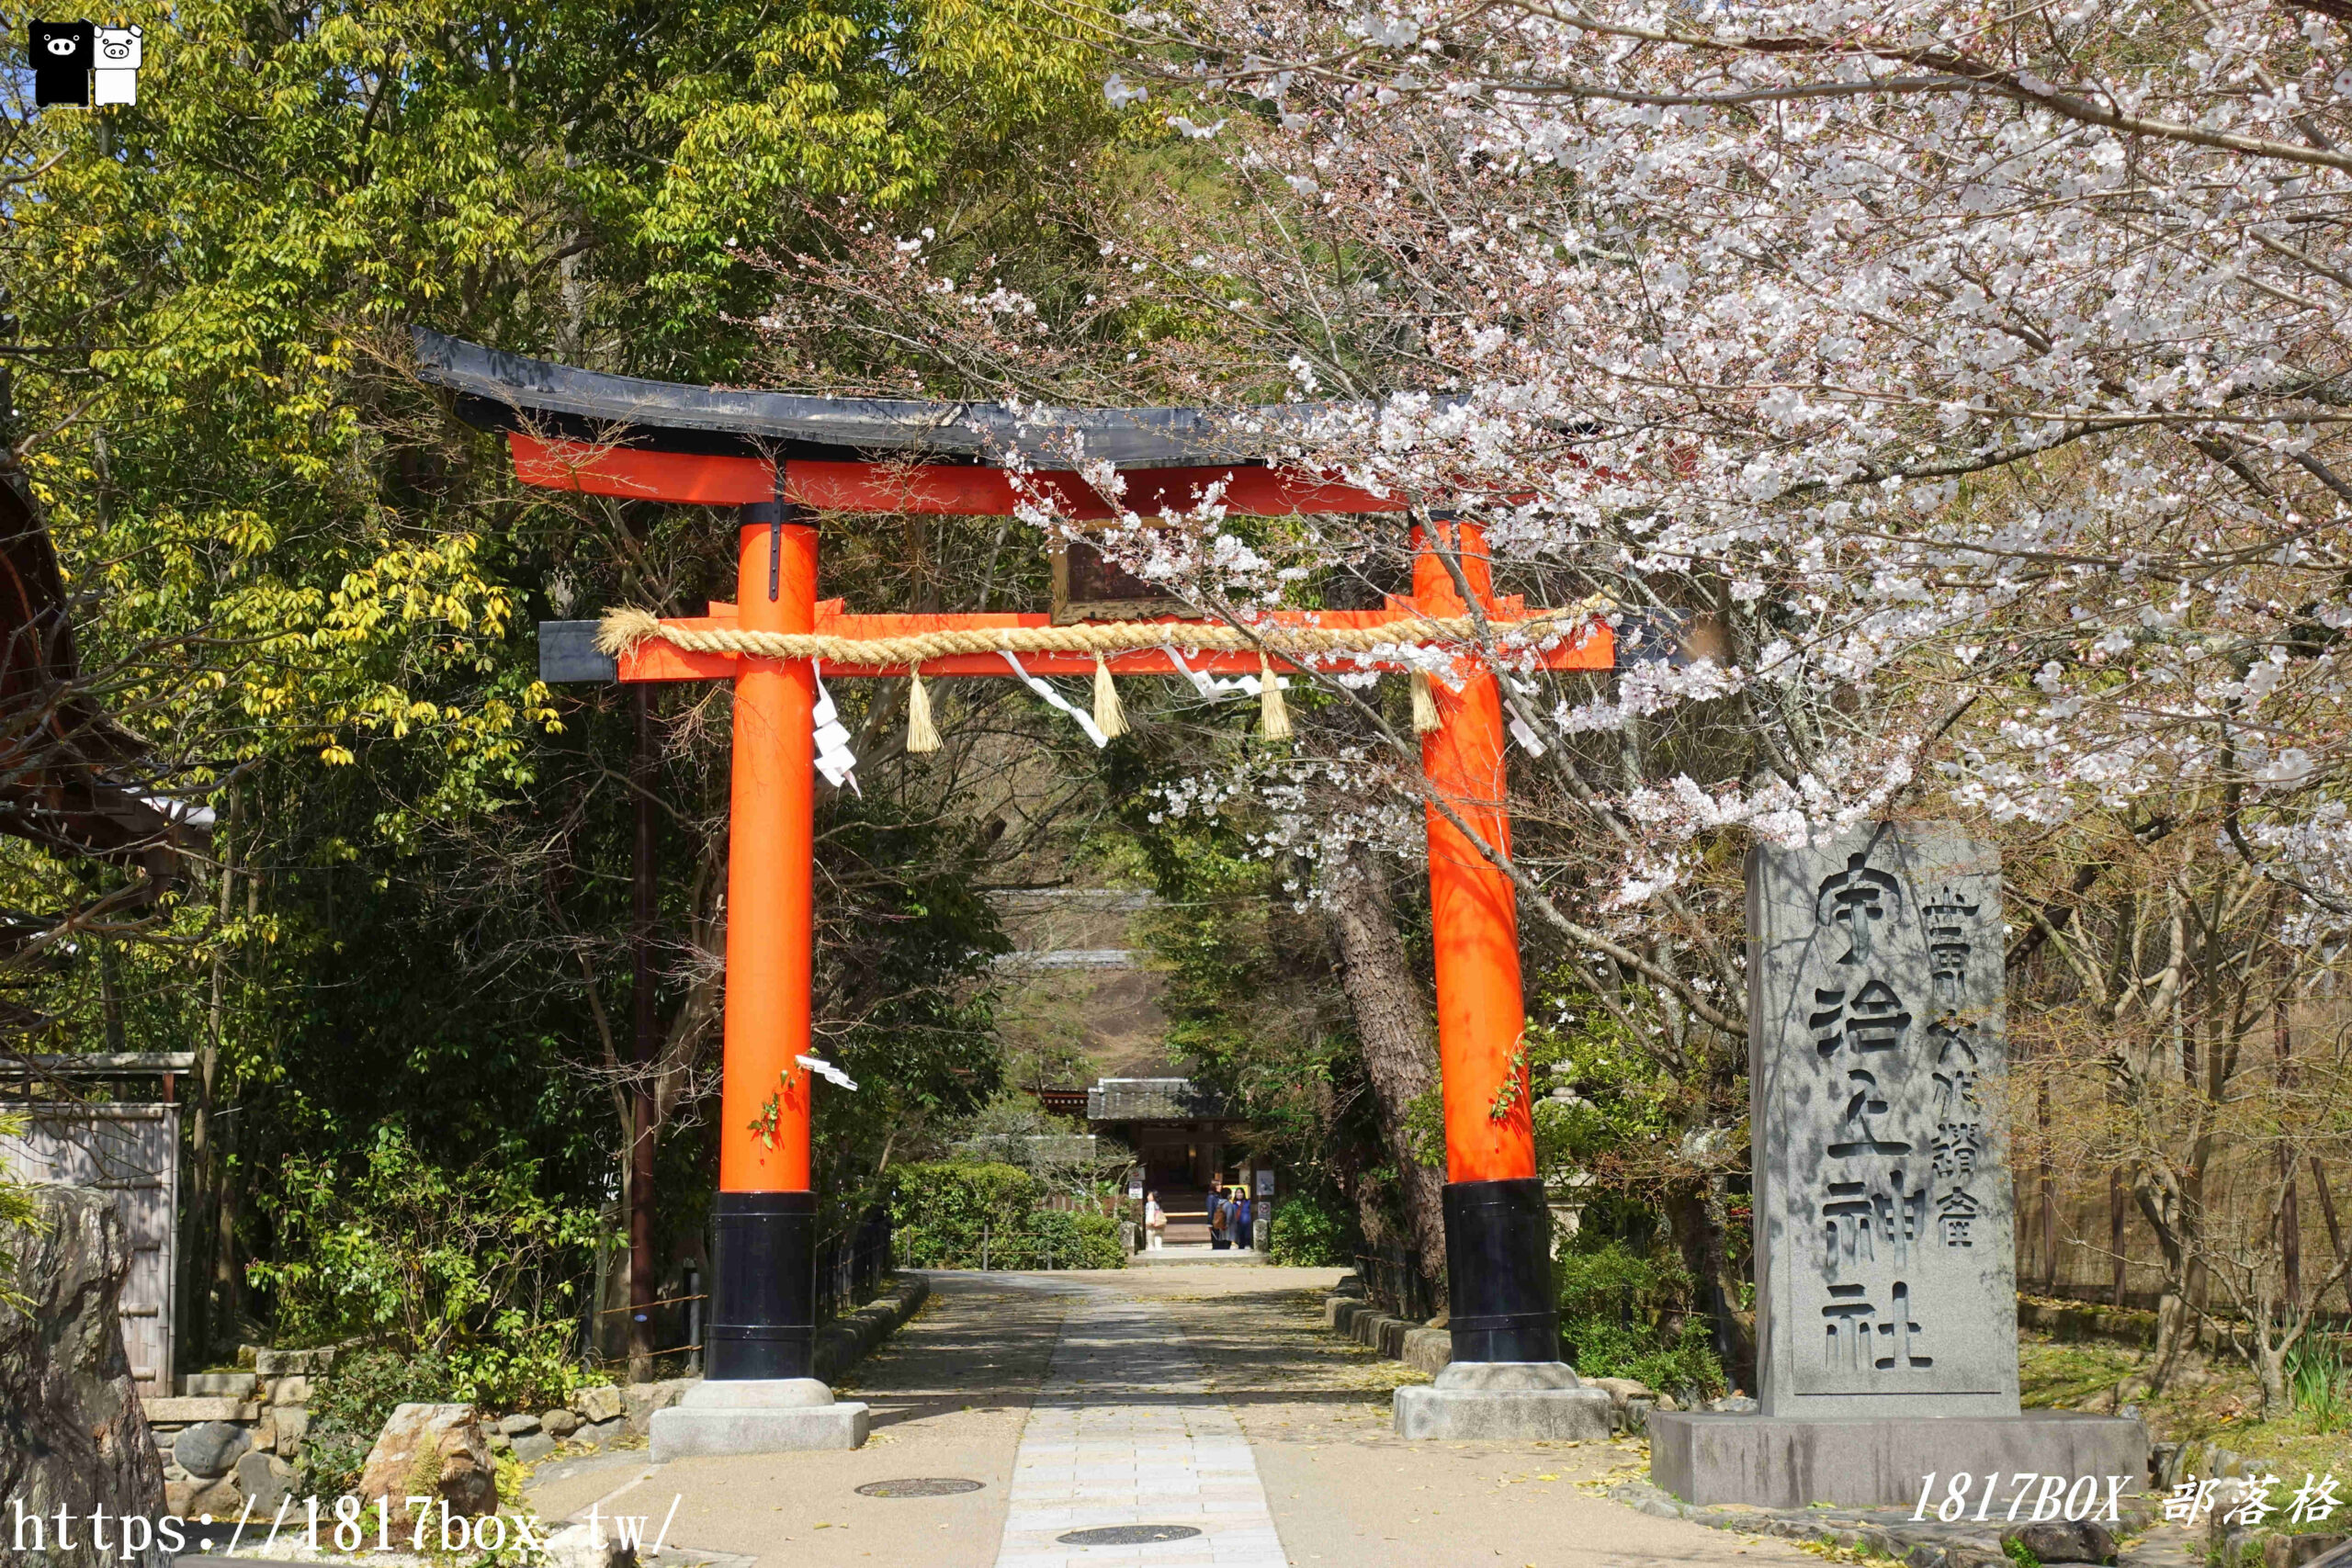 網站近期文章：【宇治景點】宇治上神社。世界文化遺産。日本最古老本殿